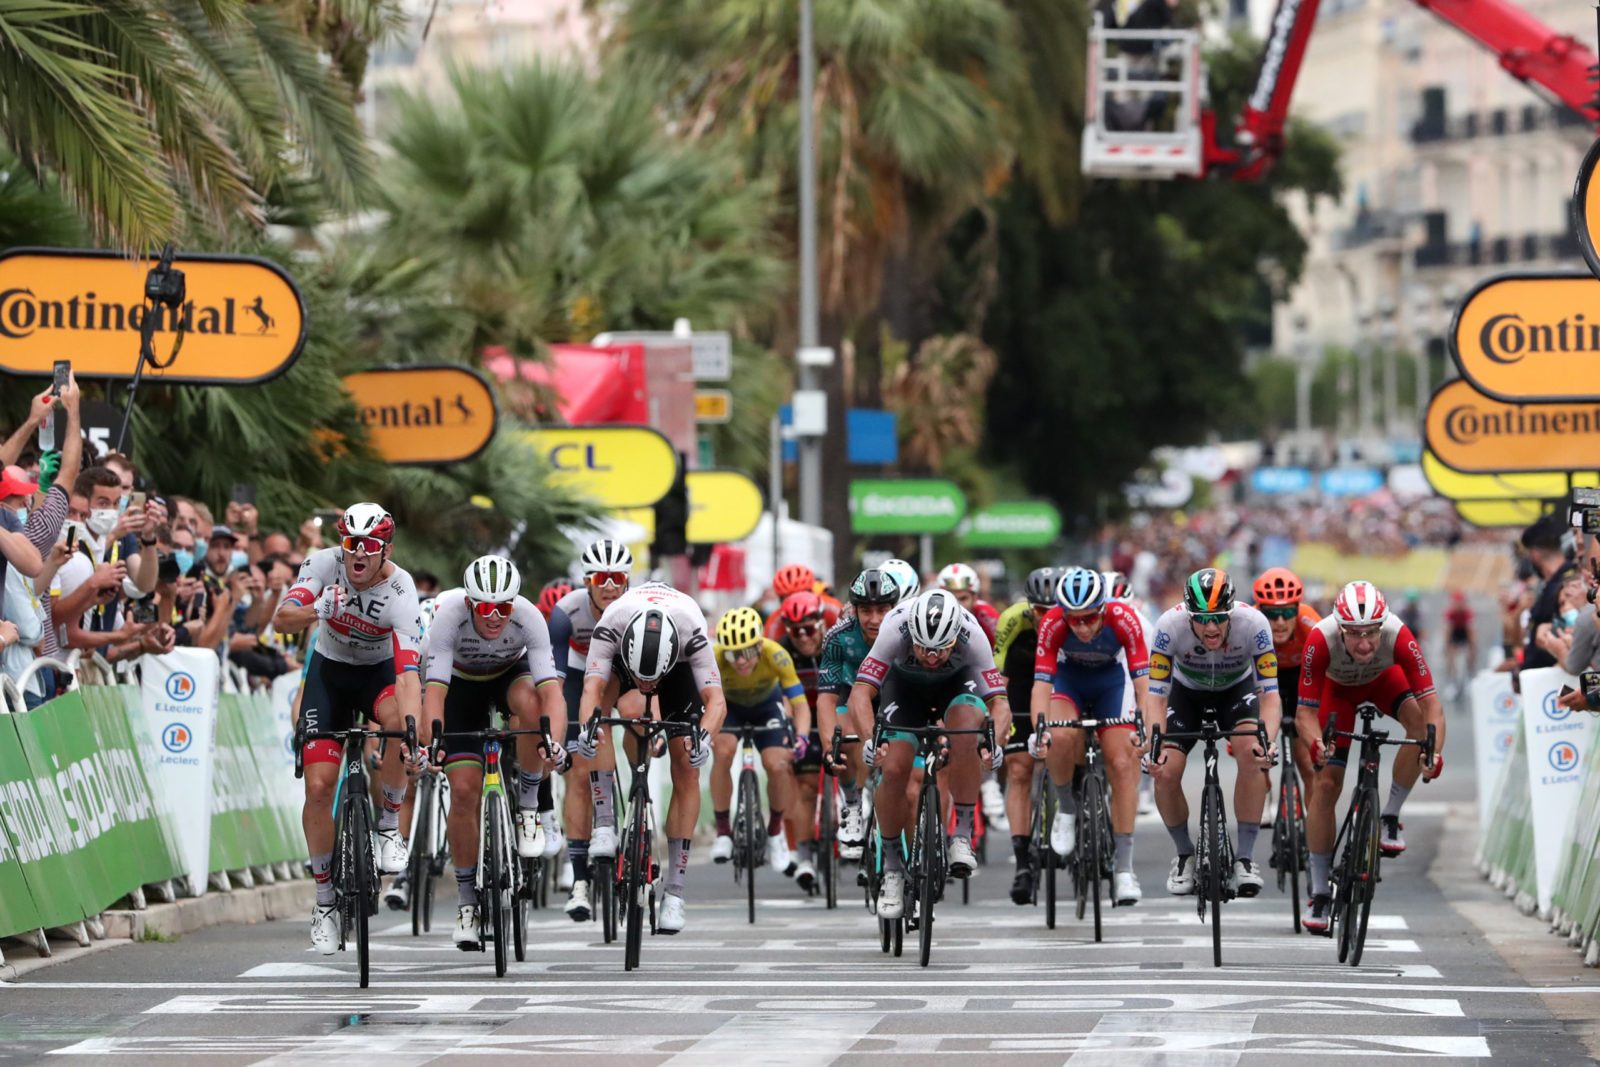 Мадс Педерсен: рад начать «Тур де Франс» с таких эмоций